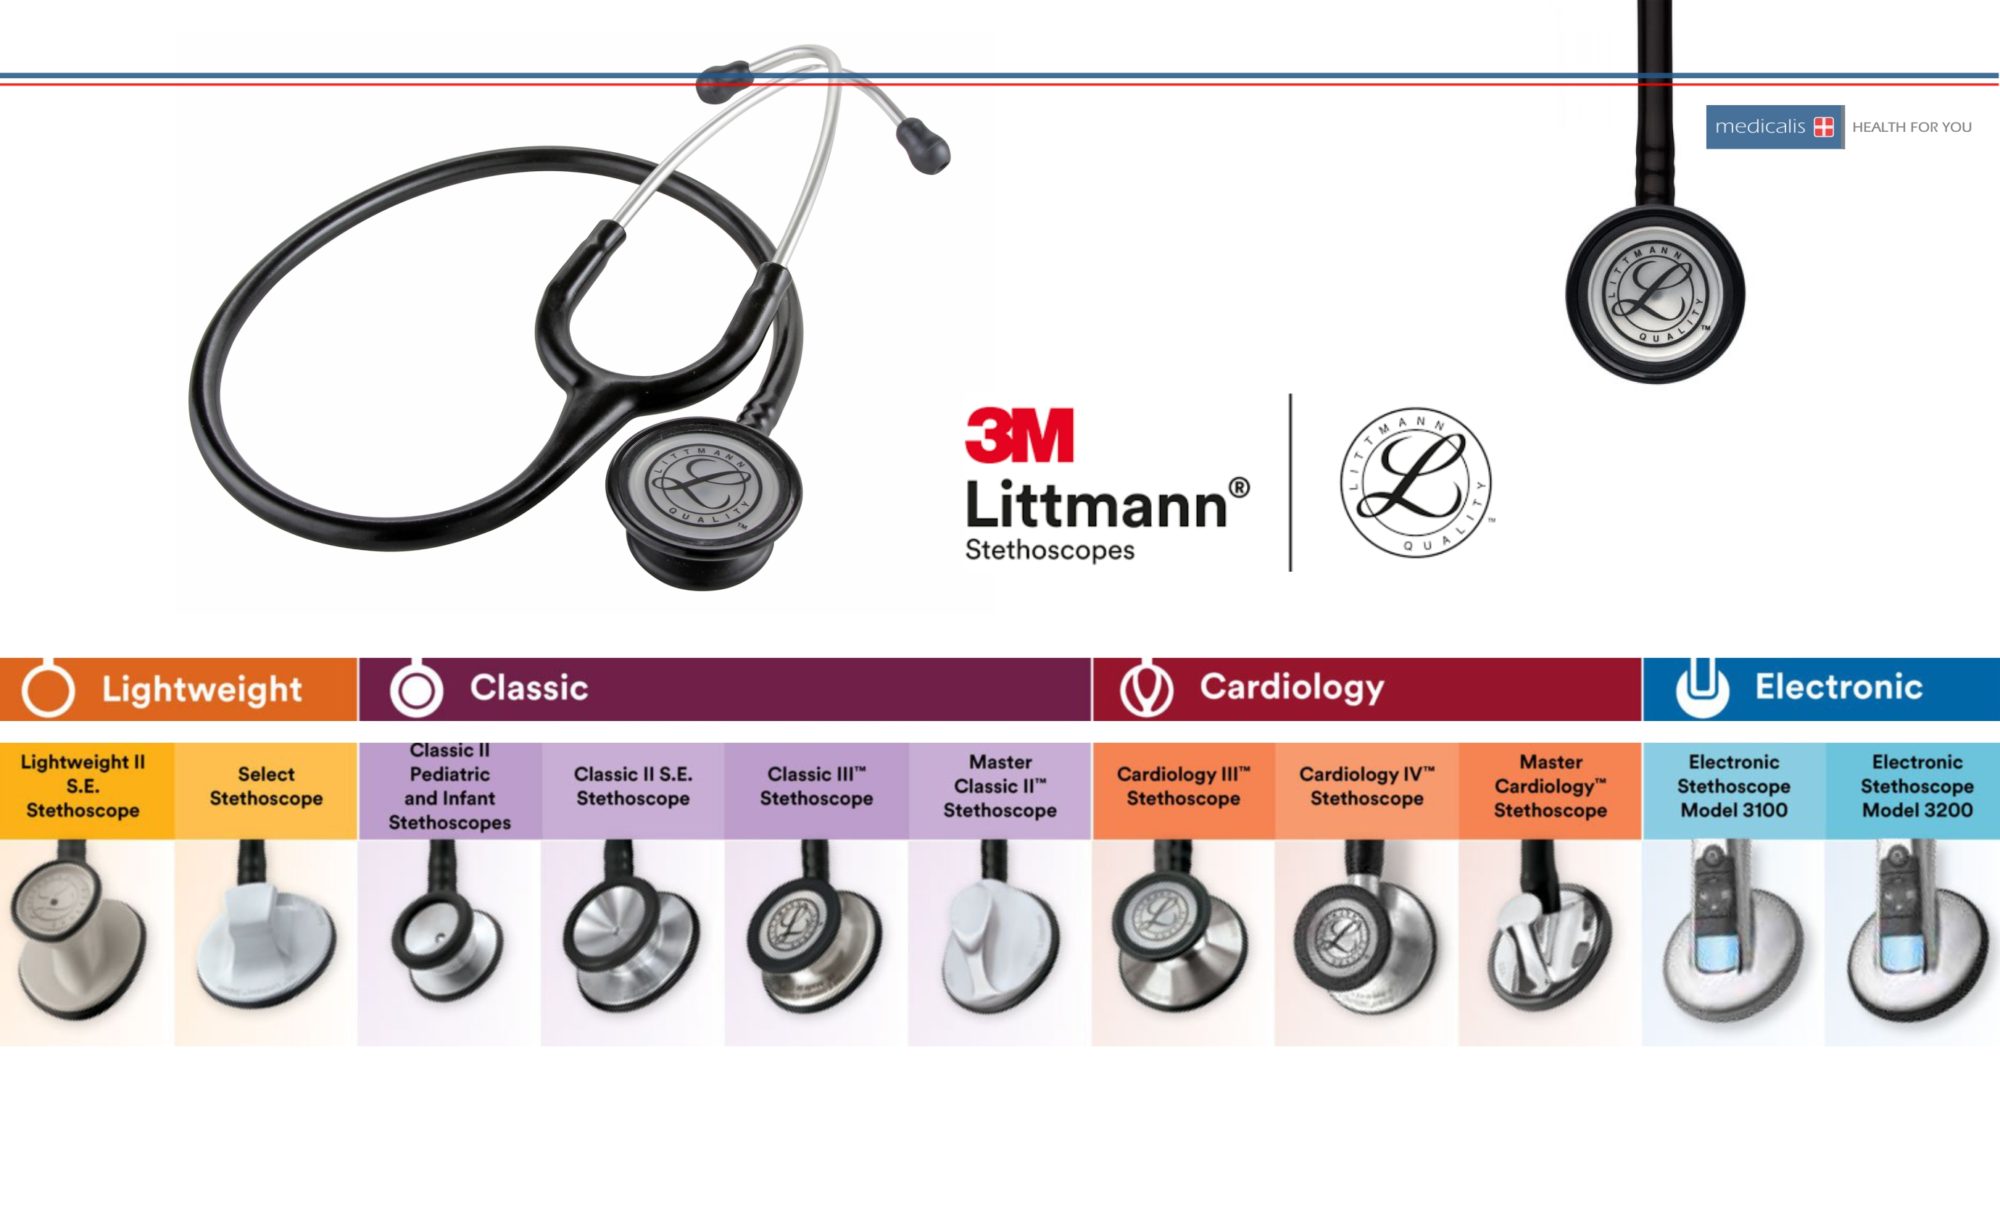 Stetoskopy Littmann